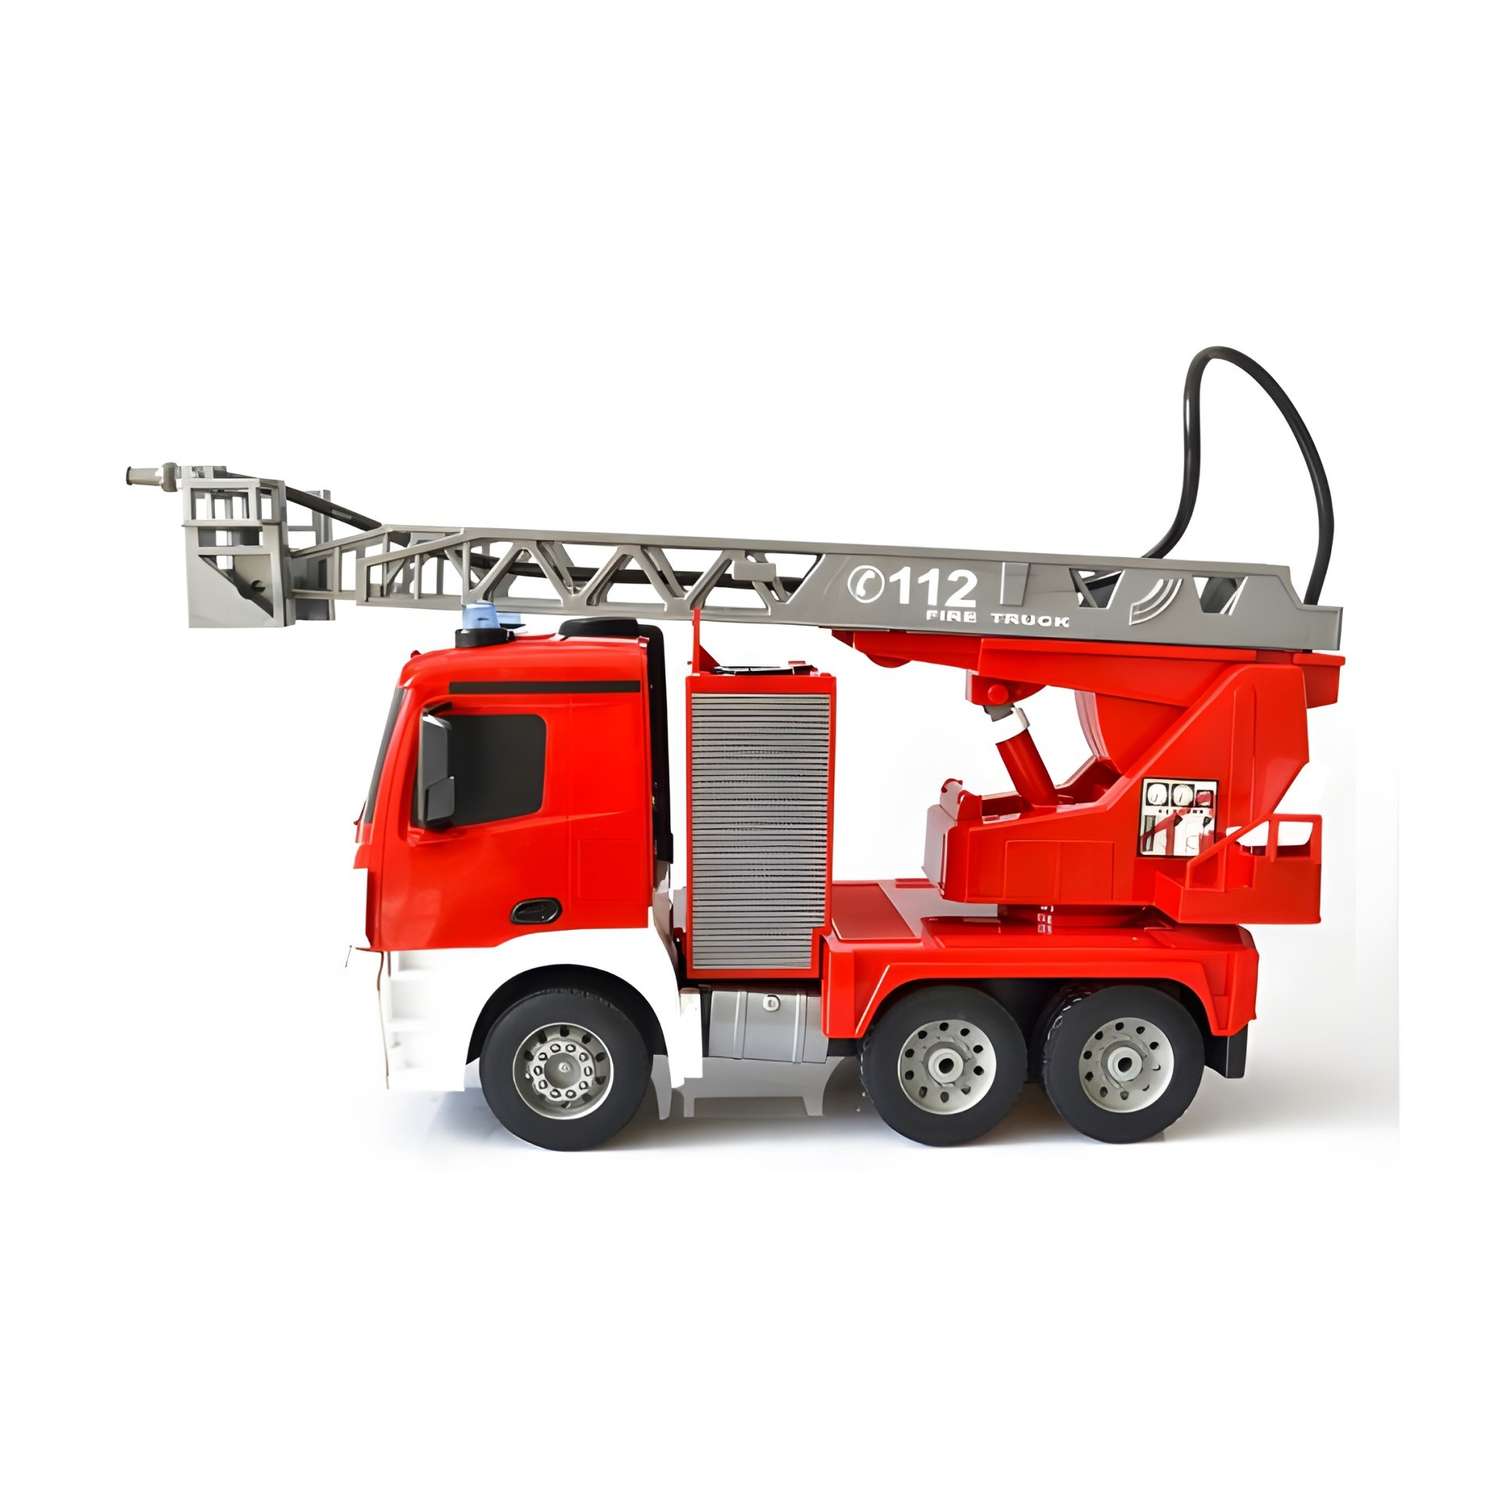 Пожарная машина DOUBLE EAGLE Радиоуправляемая 1:20 2.4G - фото 2